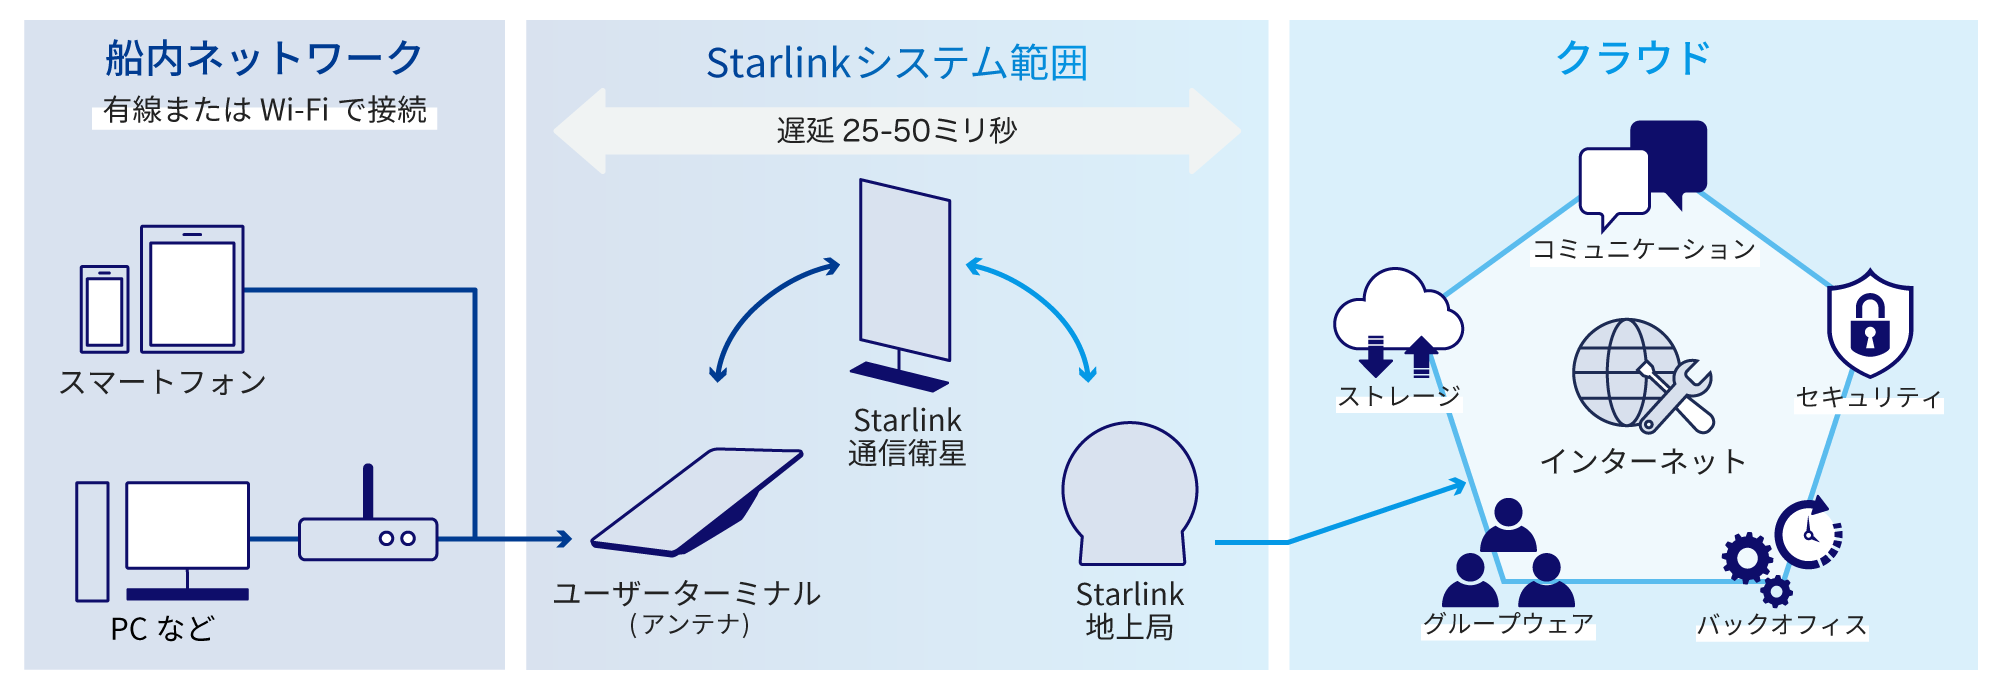 船内ネットワーク、有線またはWi-Fiで接続（PCやスマートフォンなど）→Strarlinkシステム範囲（ユーザーターミナル (アンテナ)↔Starlink通信衛星↔Starlink地上局）→クラウド